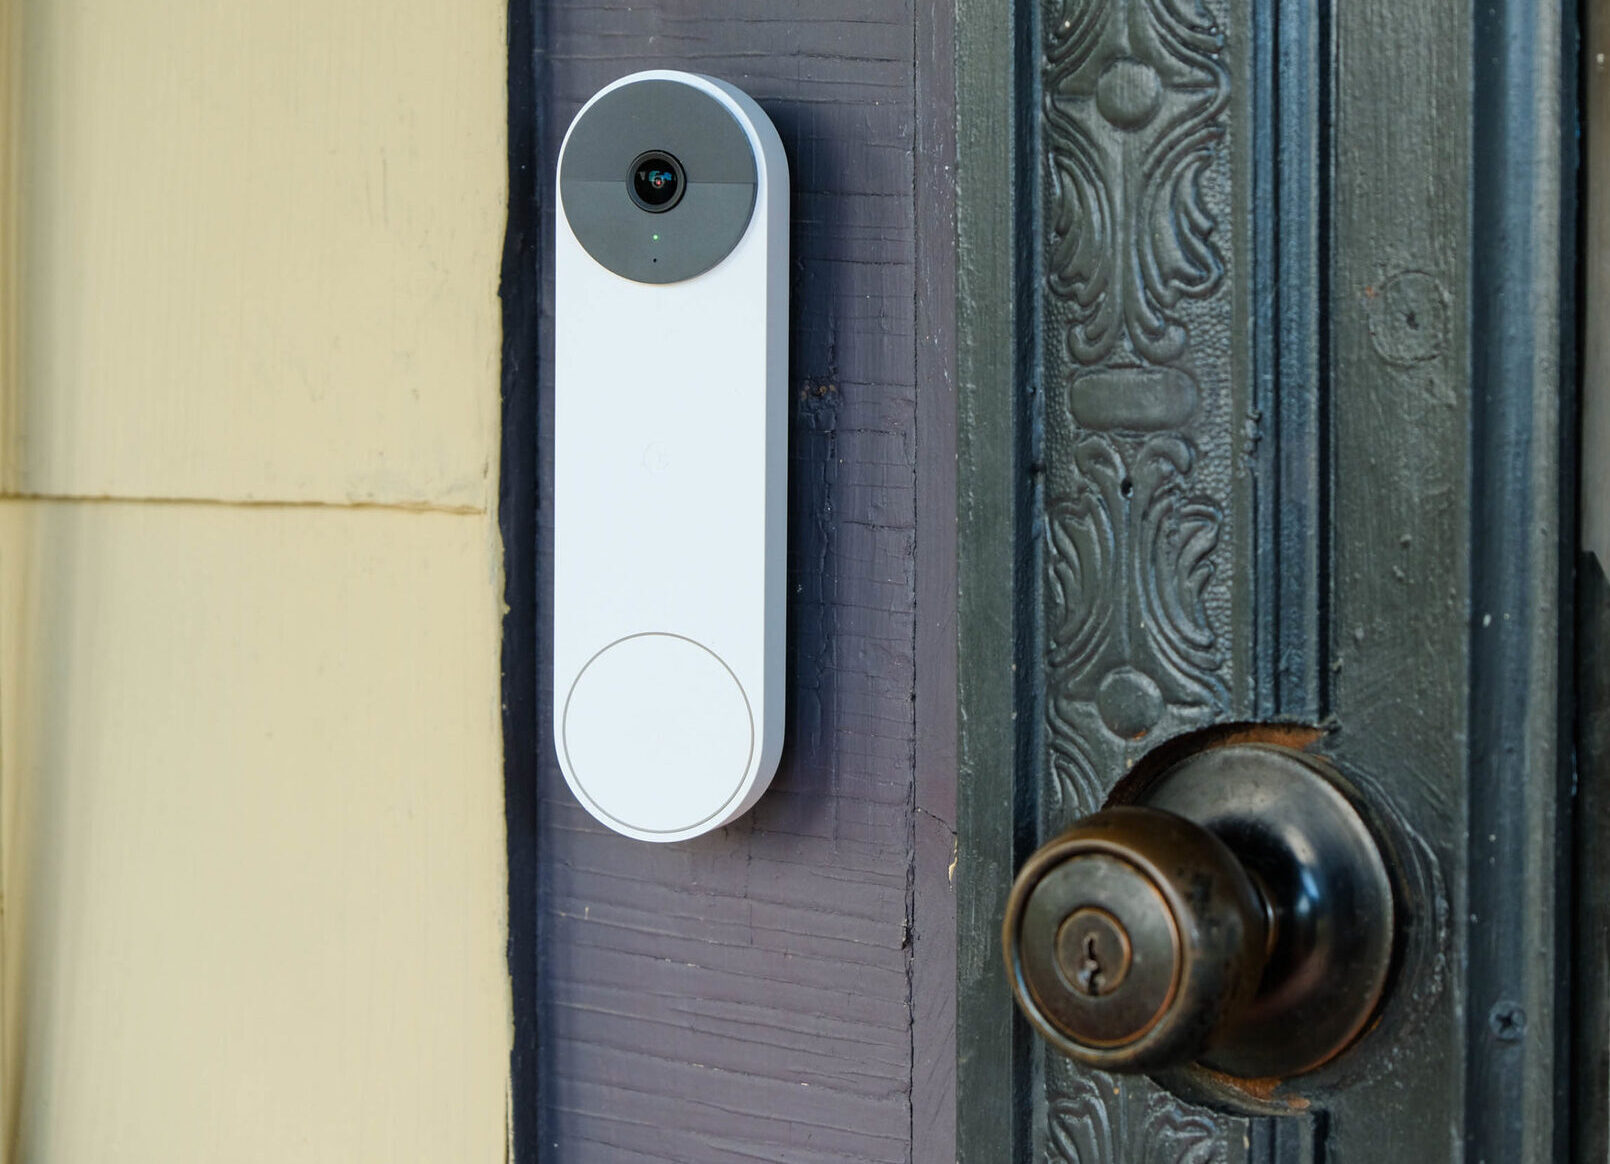 How To Set Up Nest Doorbell